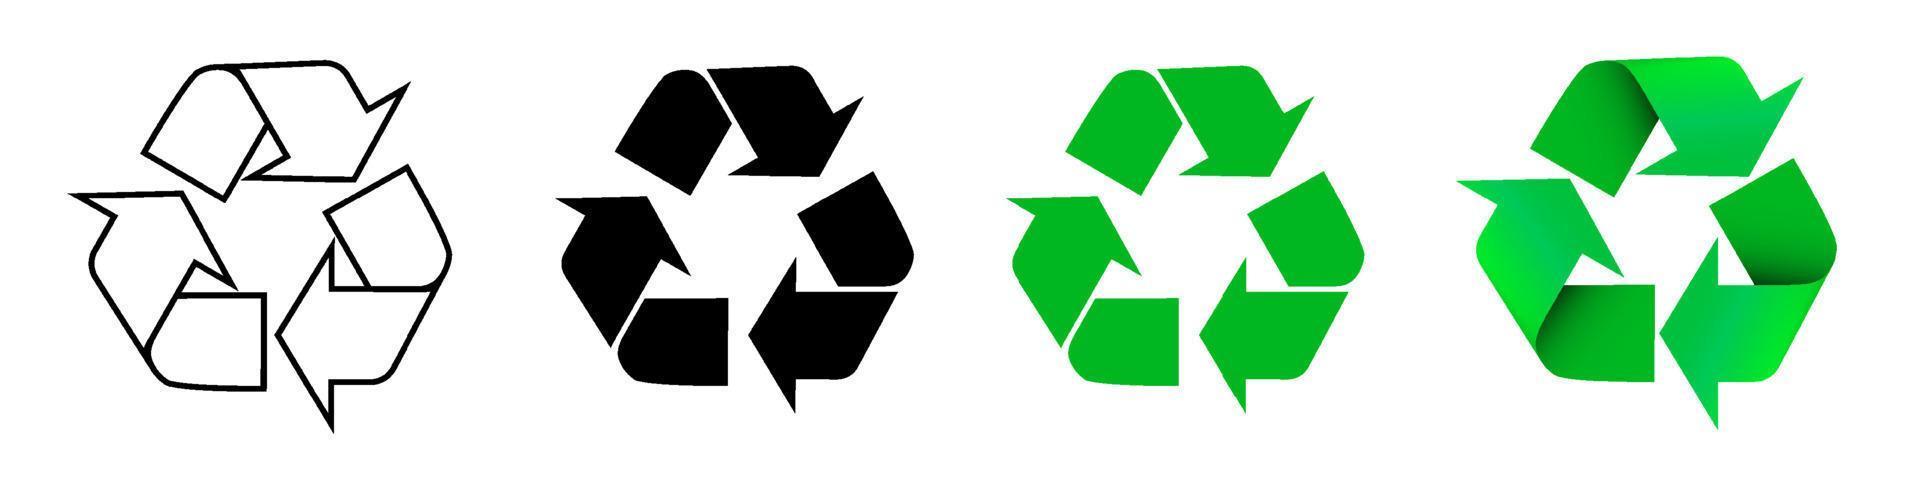 conjunto de señales de flecha para reciclar residuos, materias primas usadas. preocupación por el medio ambiente. tecnologías modernas verdes. vector aislado sobre fondo blanco